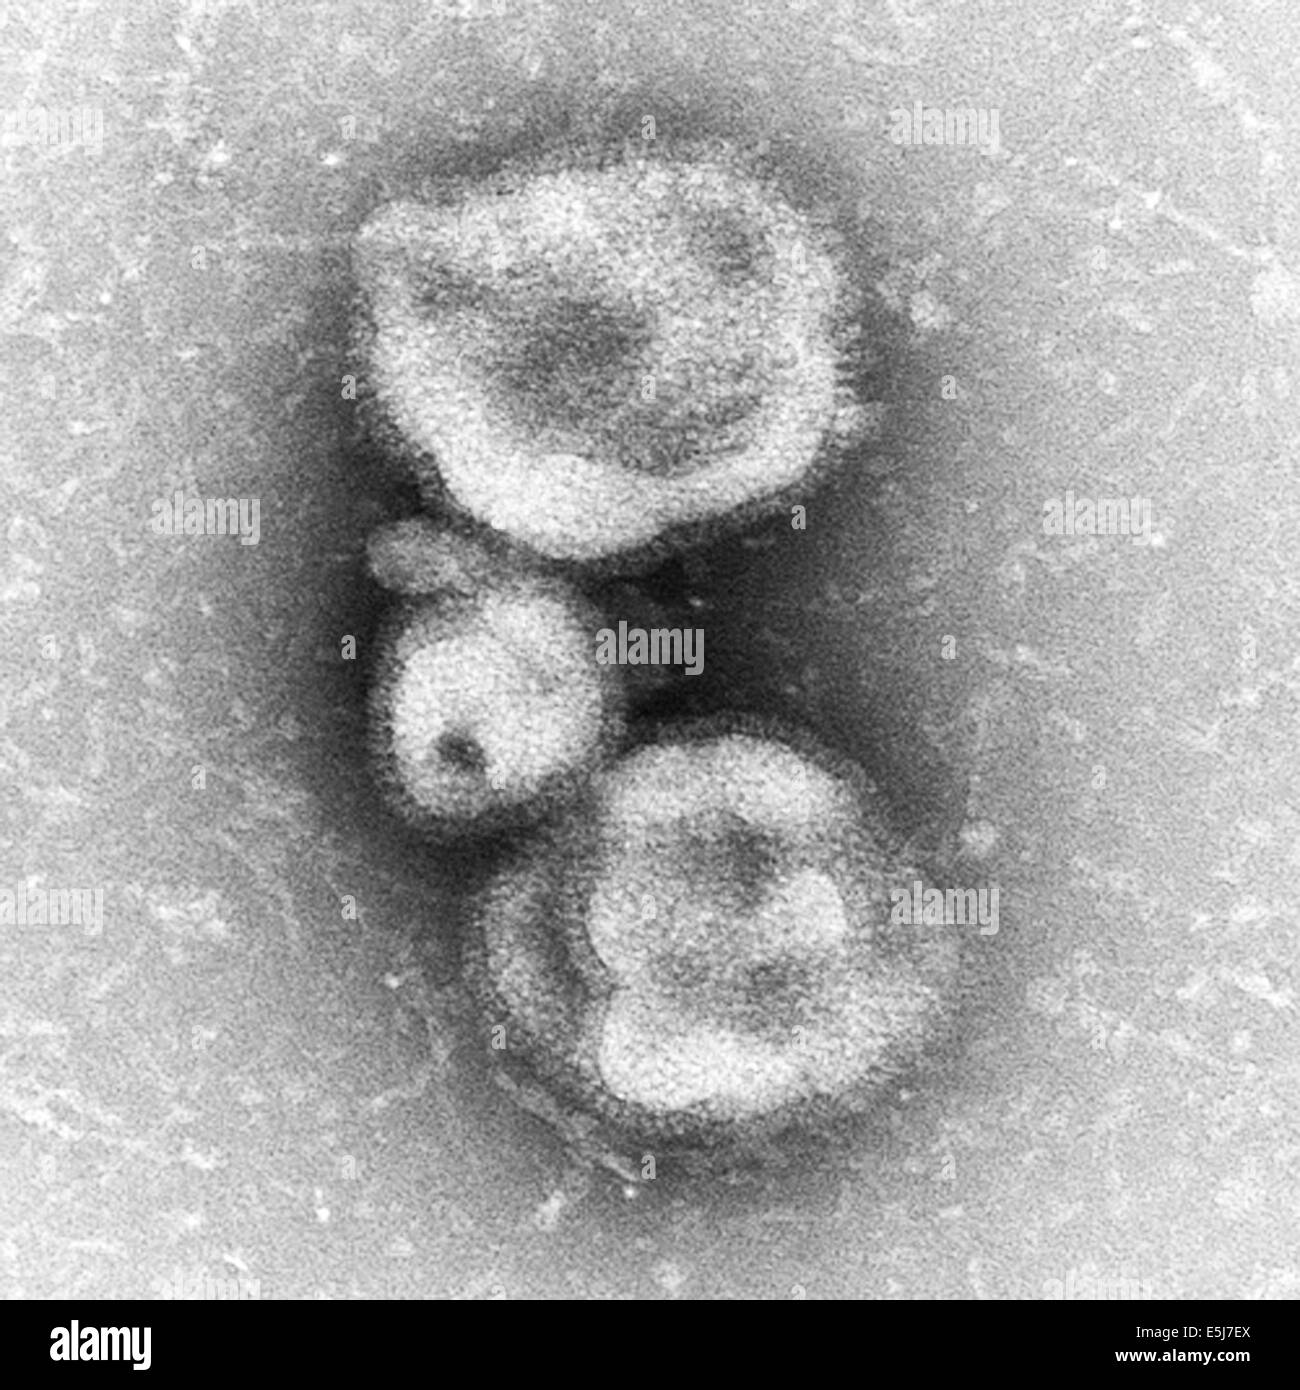 Esférica de la gripe H7N9 virus como vistos a través de un microscopio. Esferas de virus son observados en esta foto de los archivos de prensa servicio vertical Foto de stock